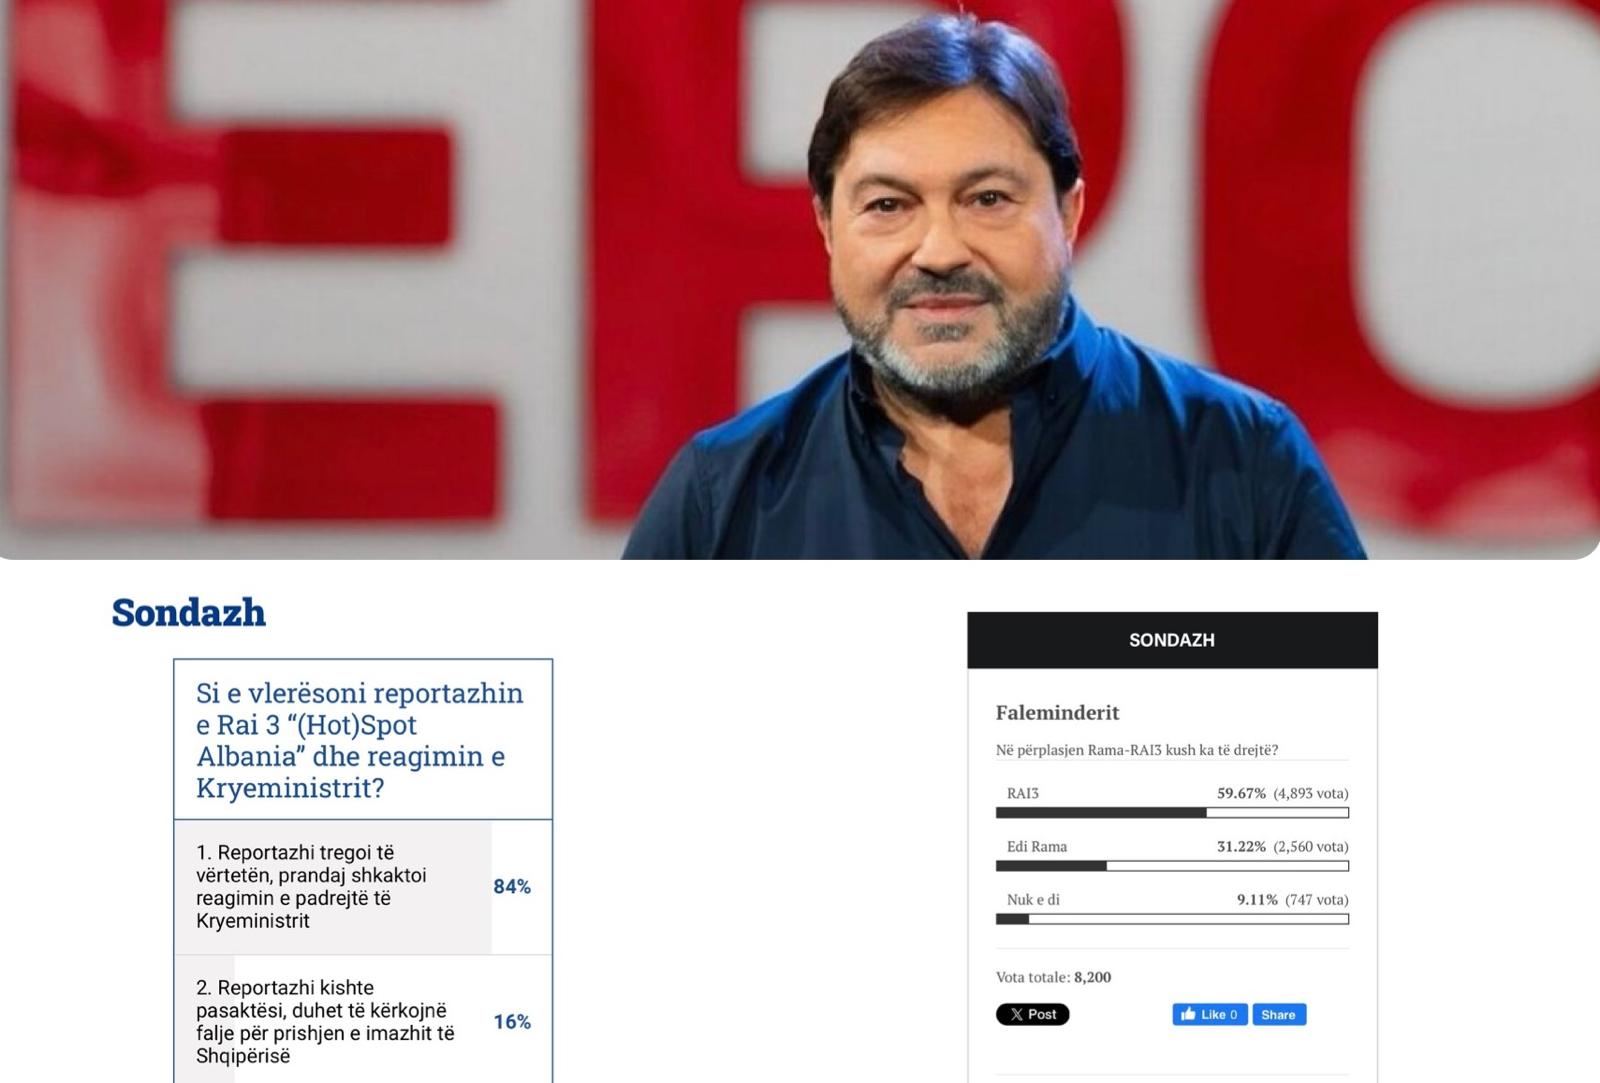 Ranucci risponde a Meloni e rilancia: nei sondaggi gli albanesi credono più a Report che a Rama. E annuncia altre novità nella puntata di stasera